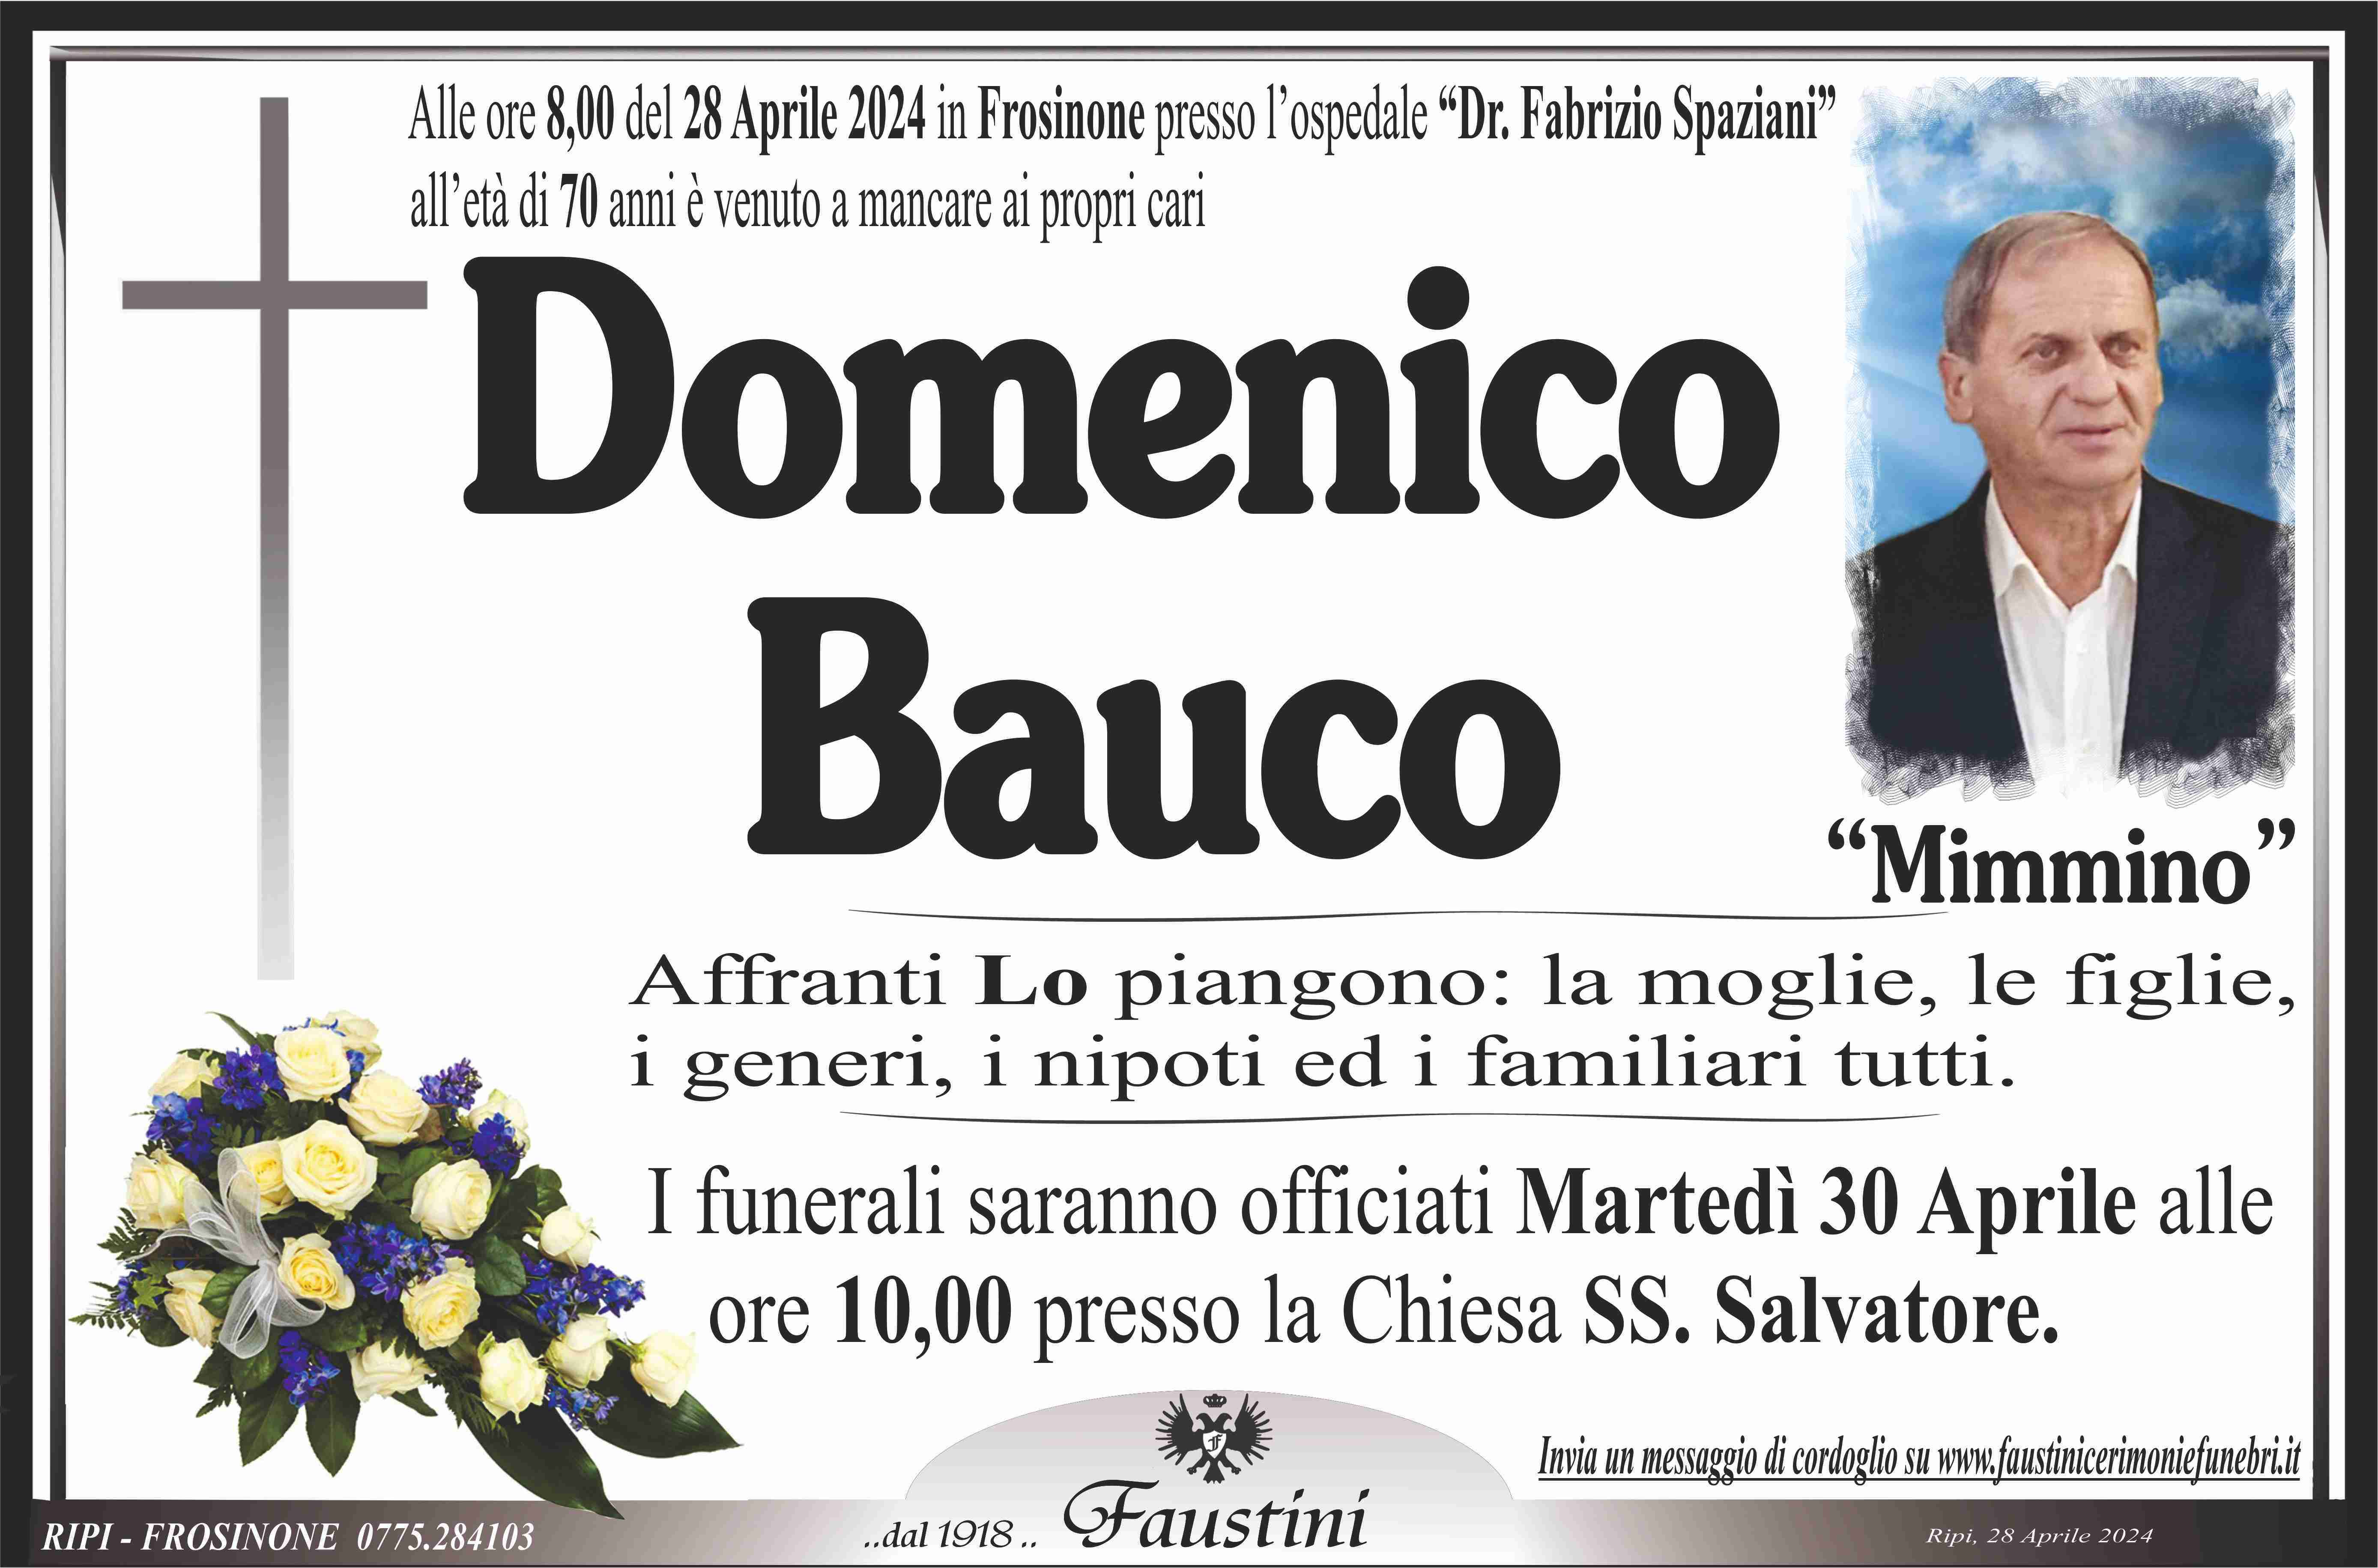 Domenico Bauco "Mimmino"